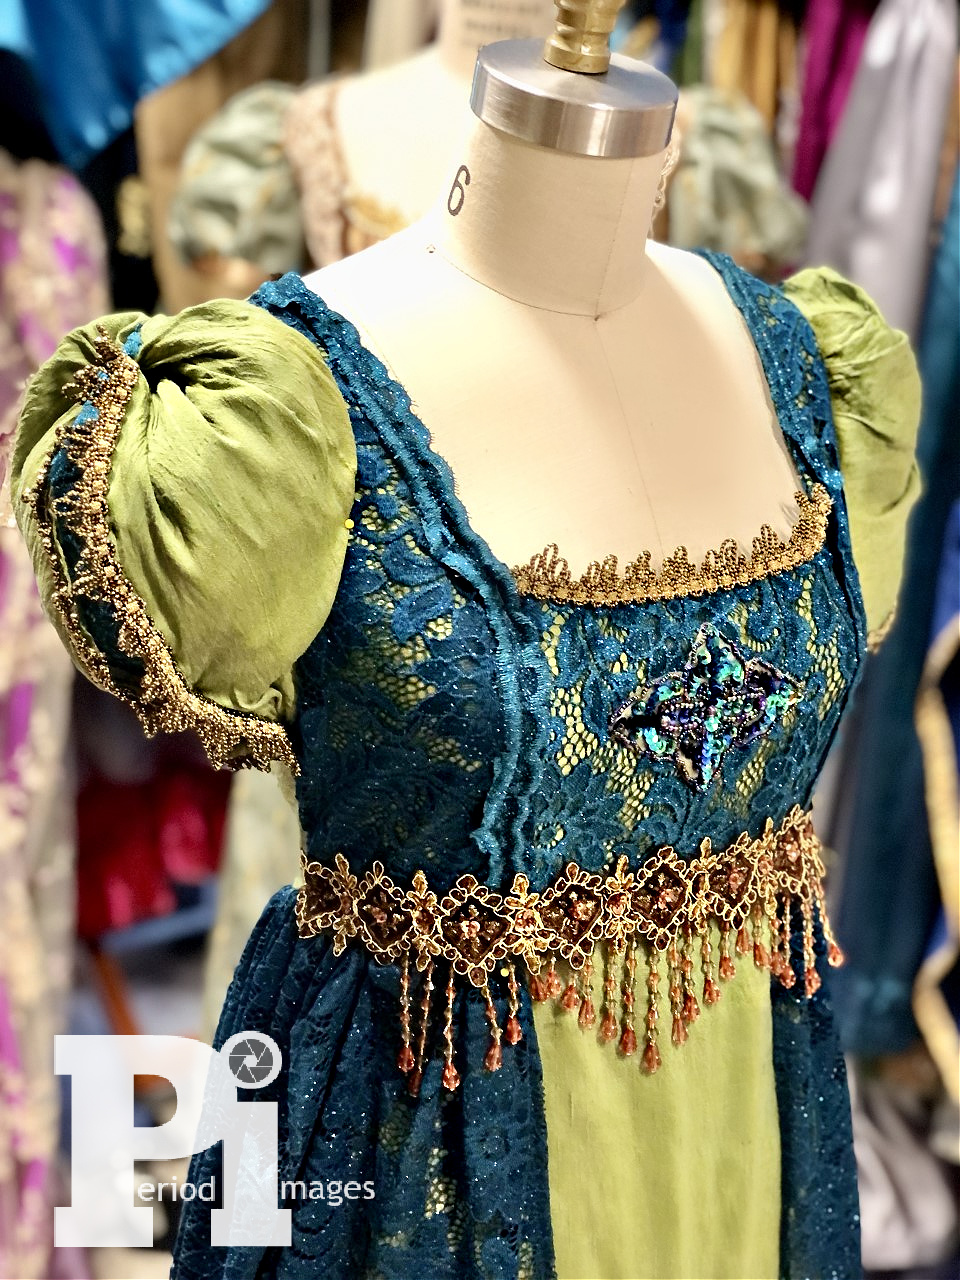 Image 1 of Lady Belinda Regency Gown